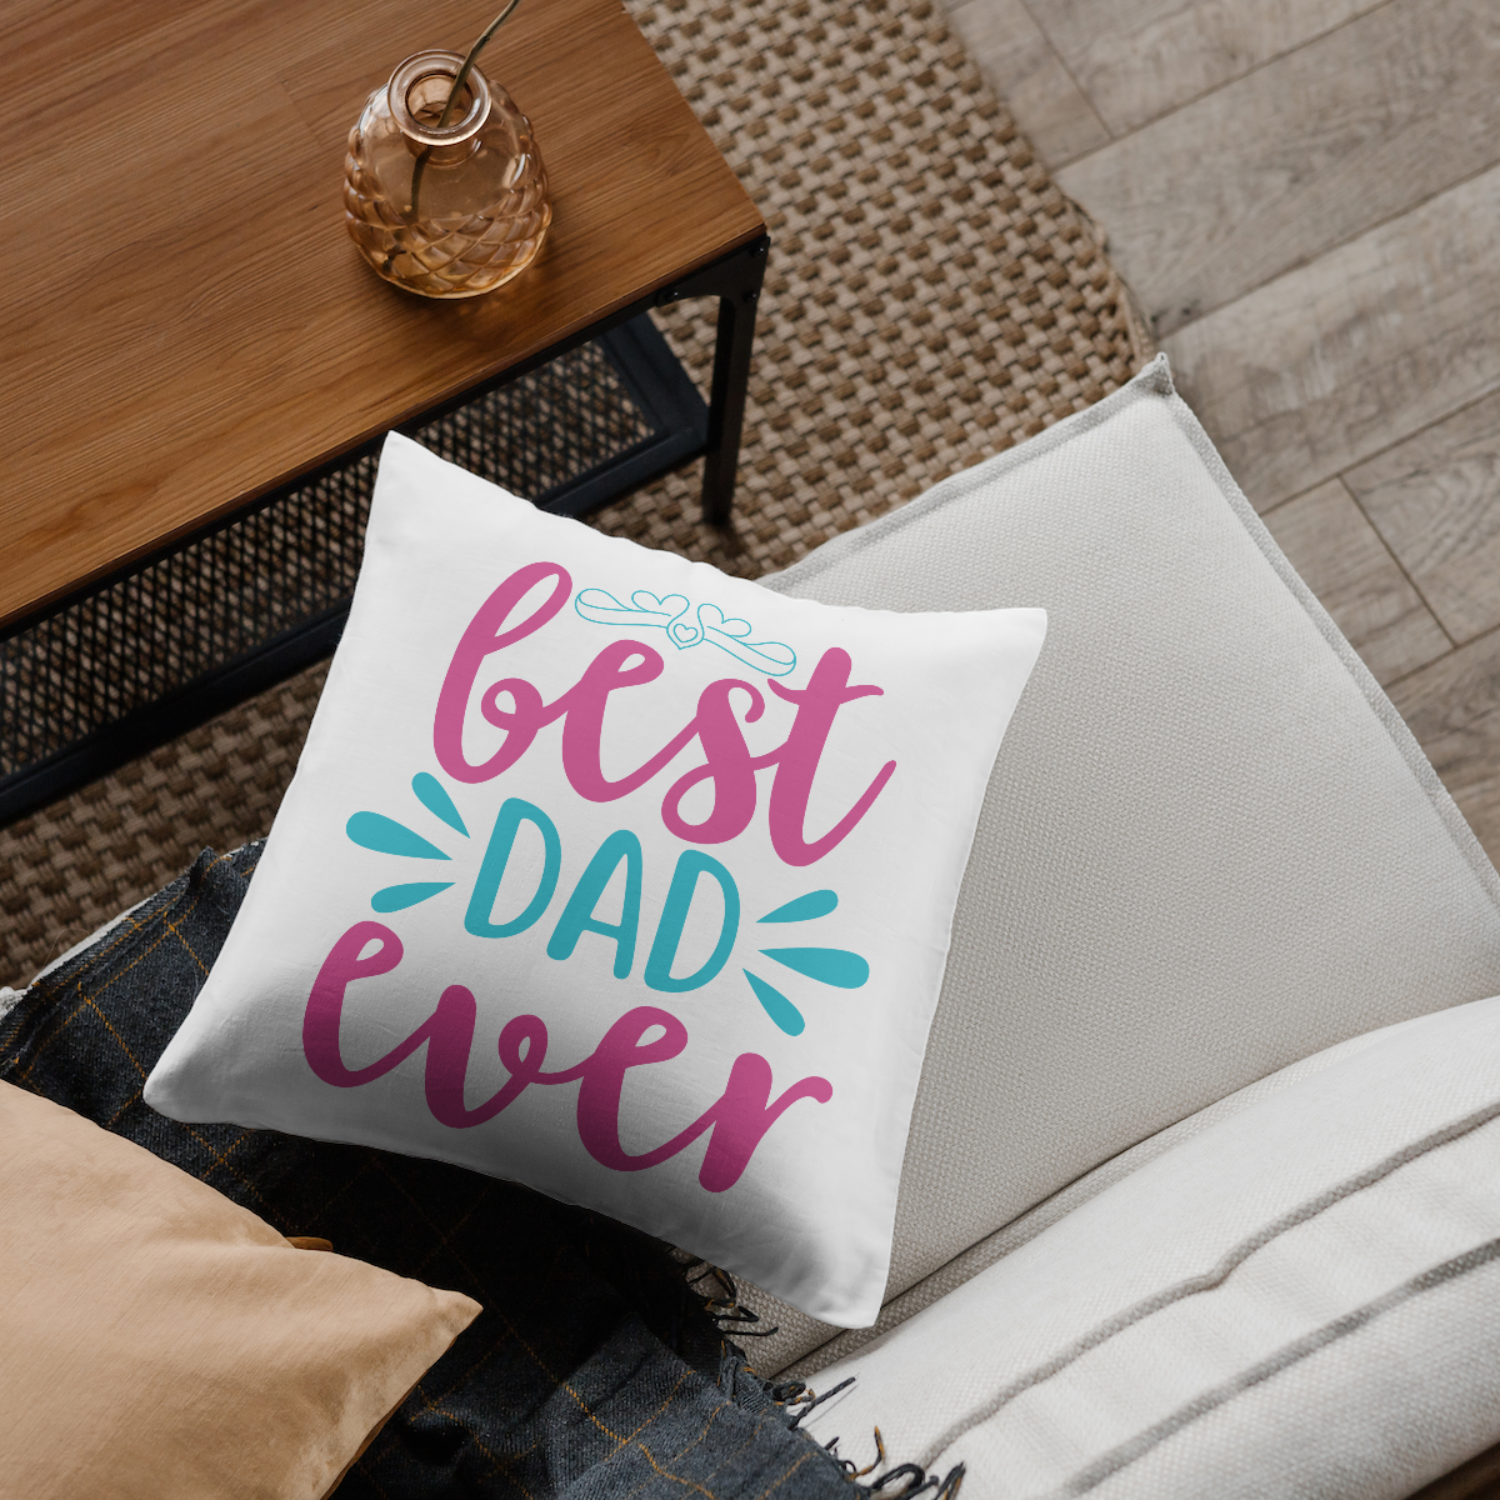 Best dad ever SVG | Digital Download | Cut File | SVG - Only The Sweet Stuff